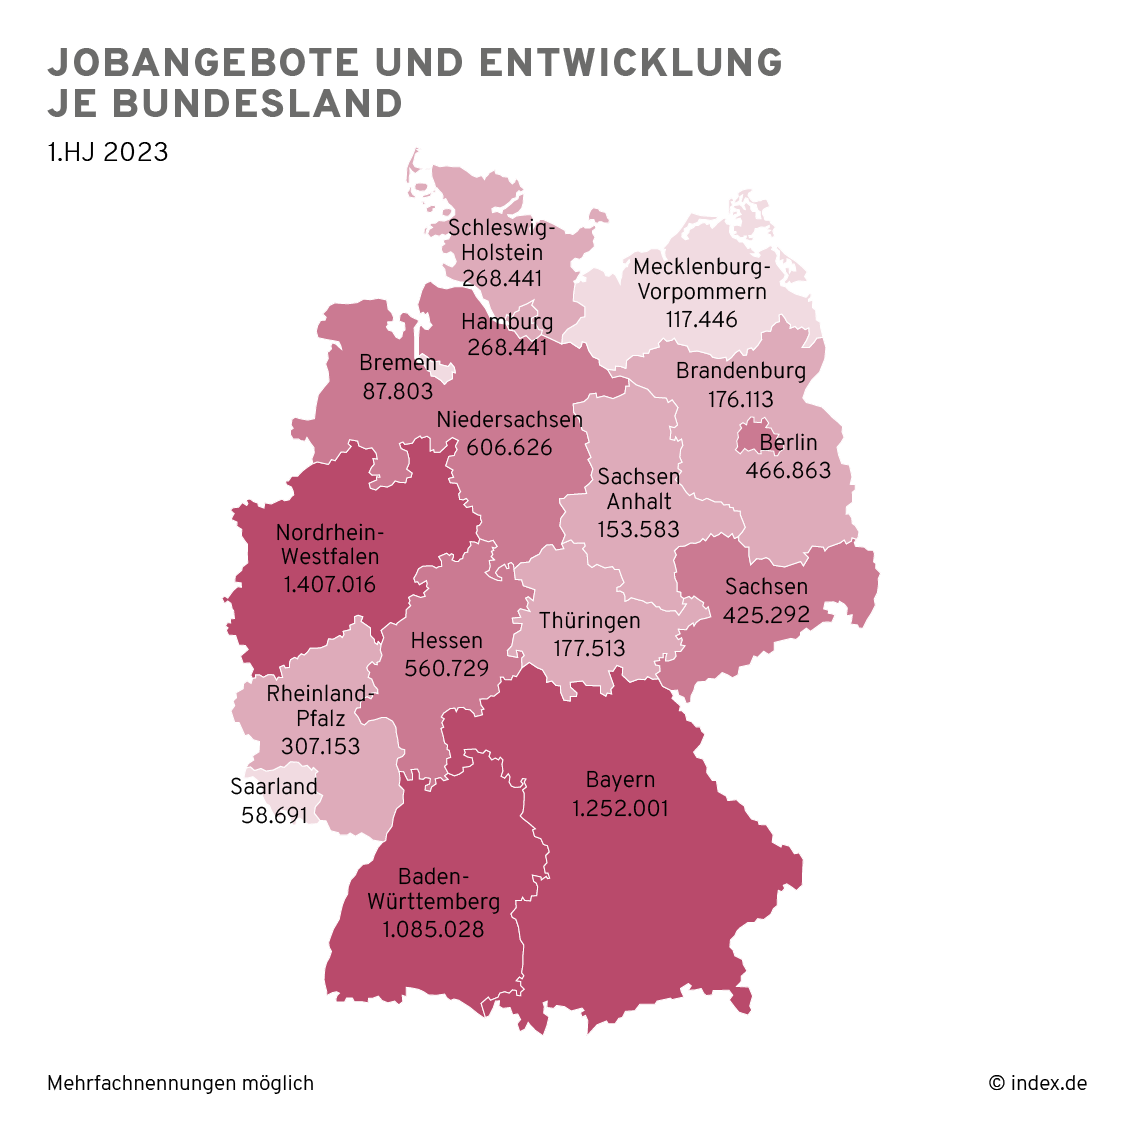 Jobangebote nach Bundesland in 2023